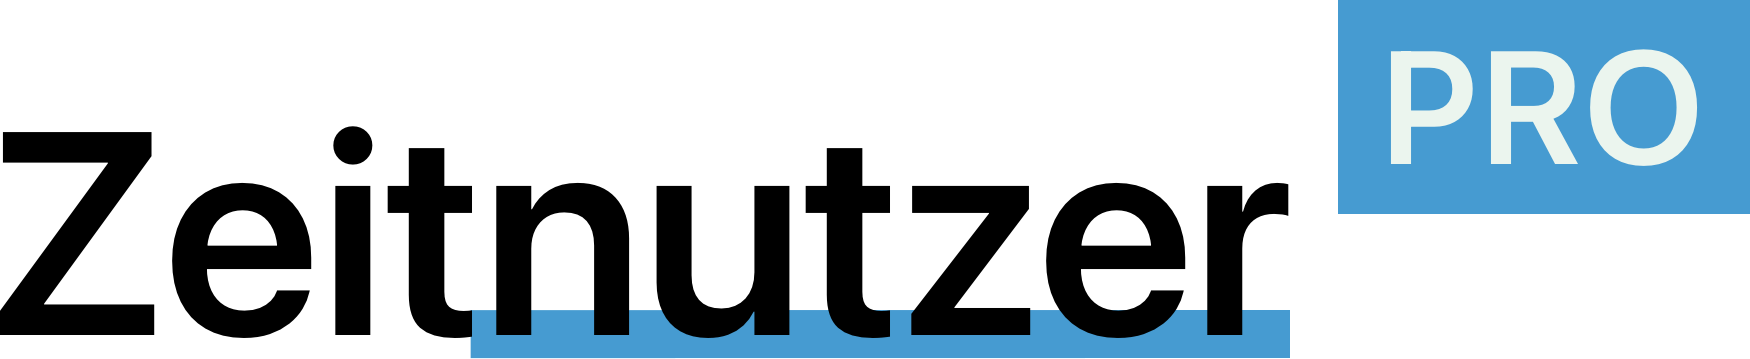 Logo Zeitnutzer PRO-Club